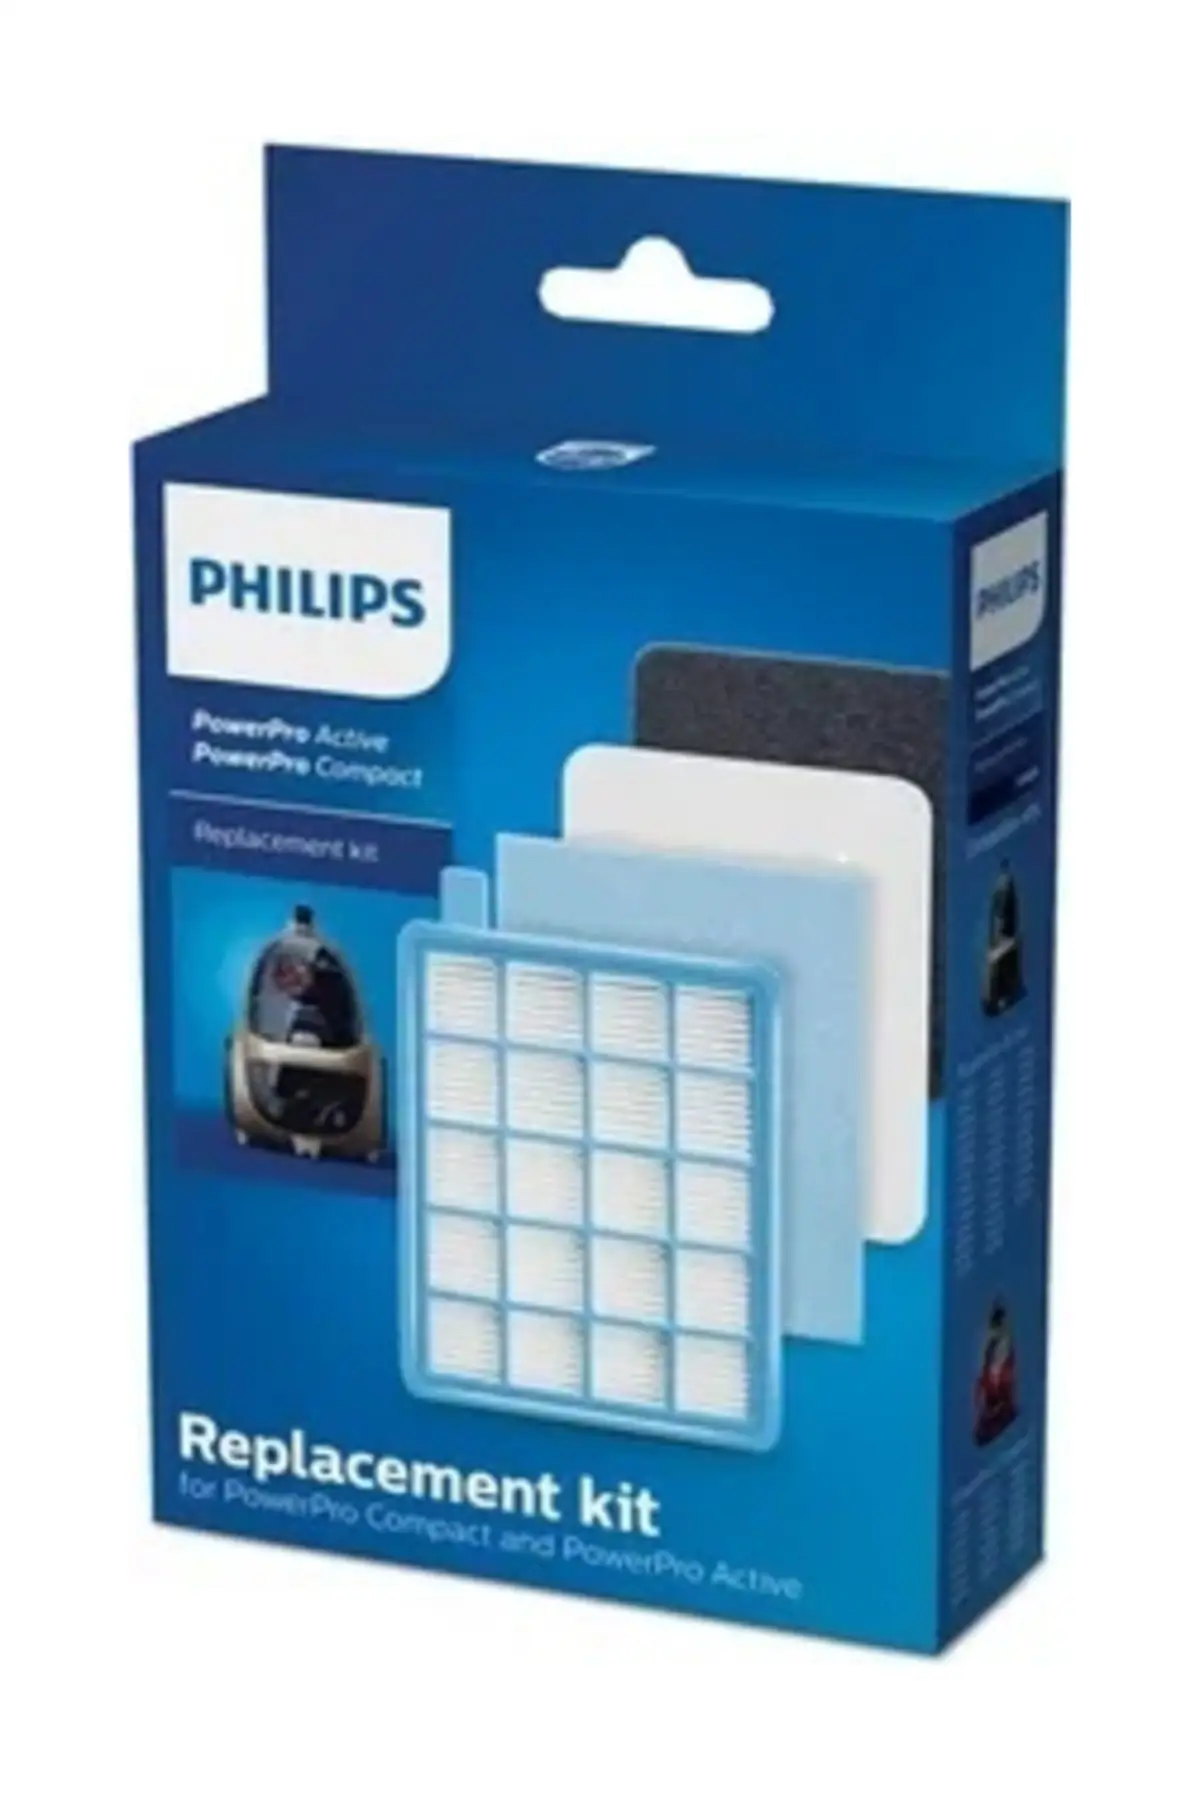 Philips Fc 8475/01 Powerpro компактный оригинальный набор Hepa-фильтров Филипс запасные части Аксессуары